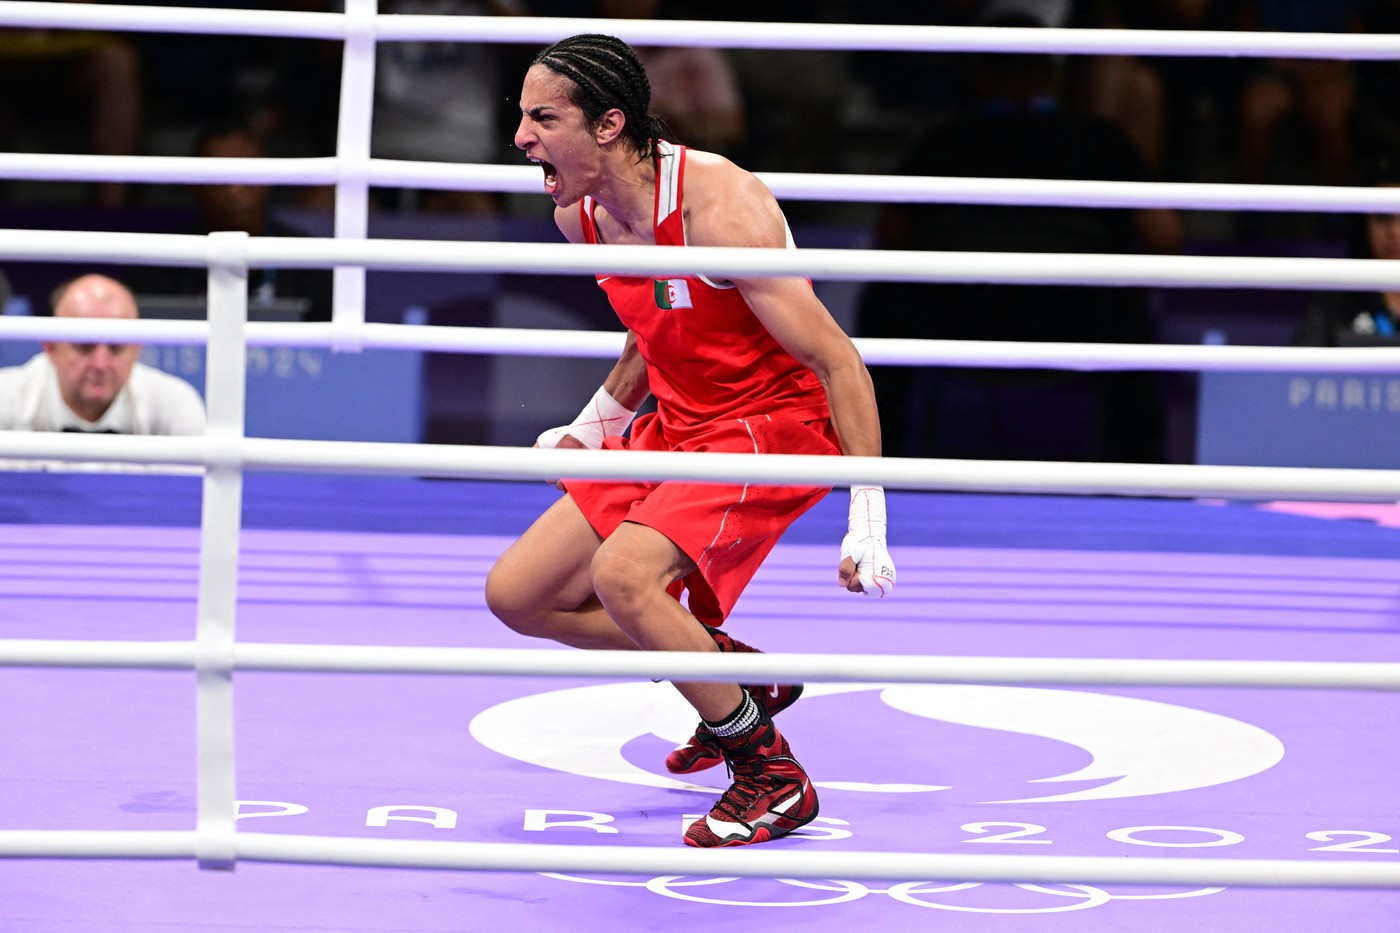 Imane Khelif a învins-o pe Luca Anna Hamori şi şi-a asigurat o medalie olimpică